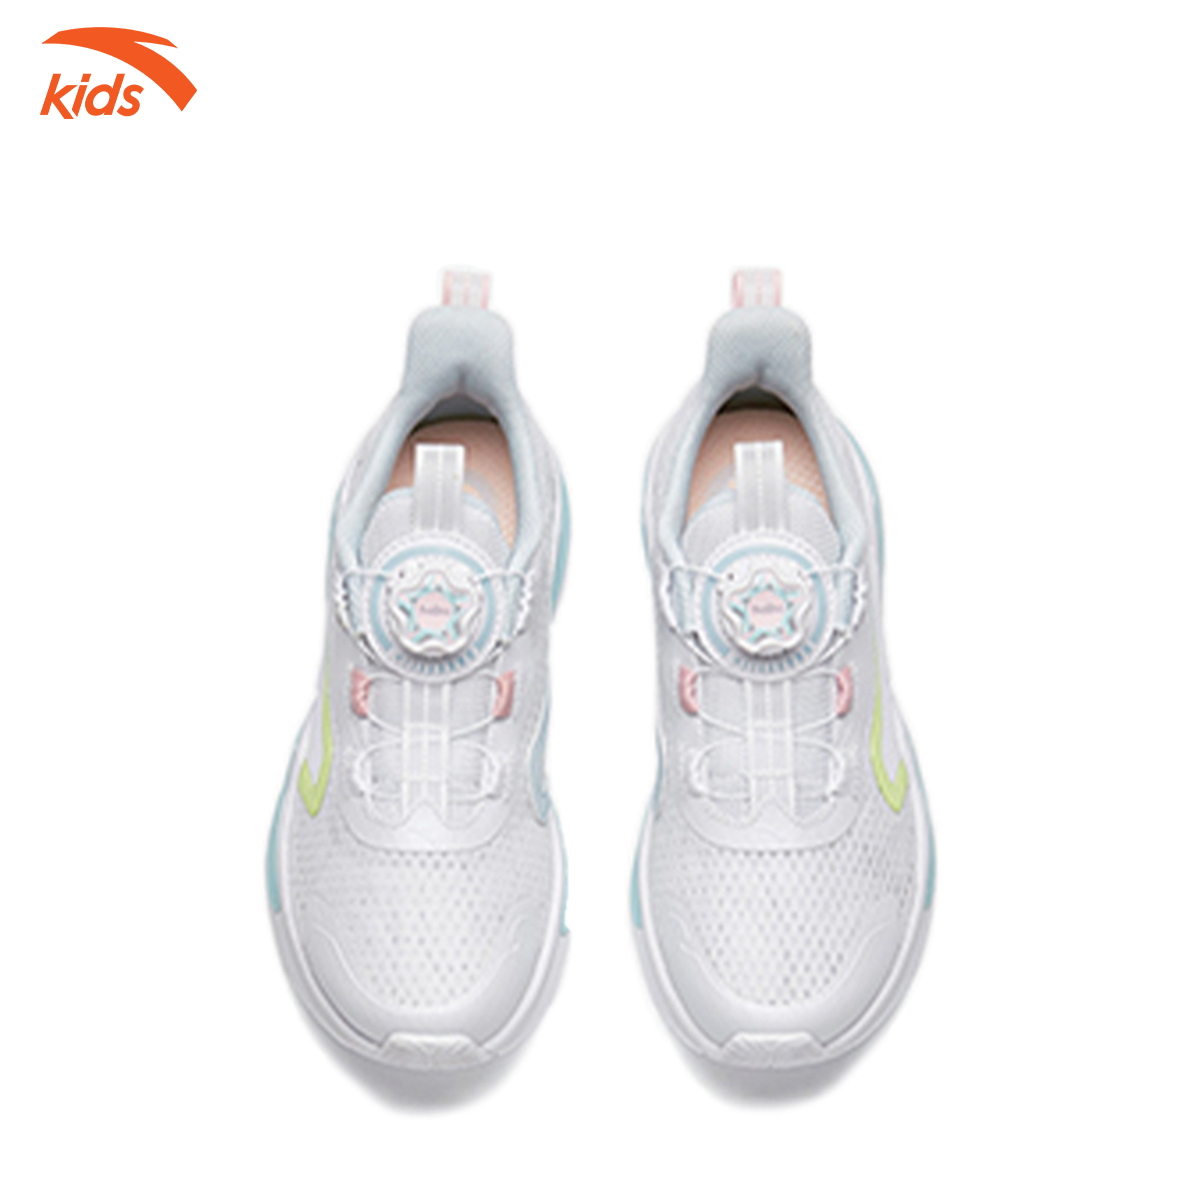 Giày thể thao bé gái Anta Kids, dòng chạy, thiết kế khóa habu tiện lợi, mặt lưới thoáng khí 322235571